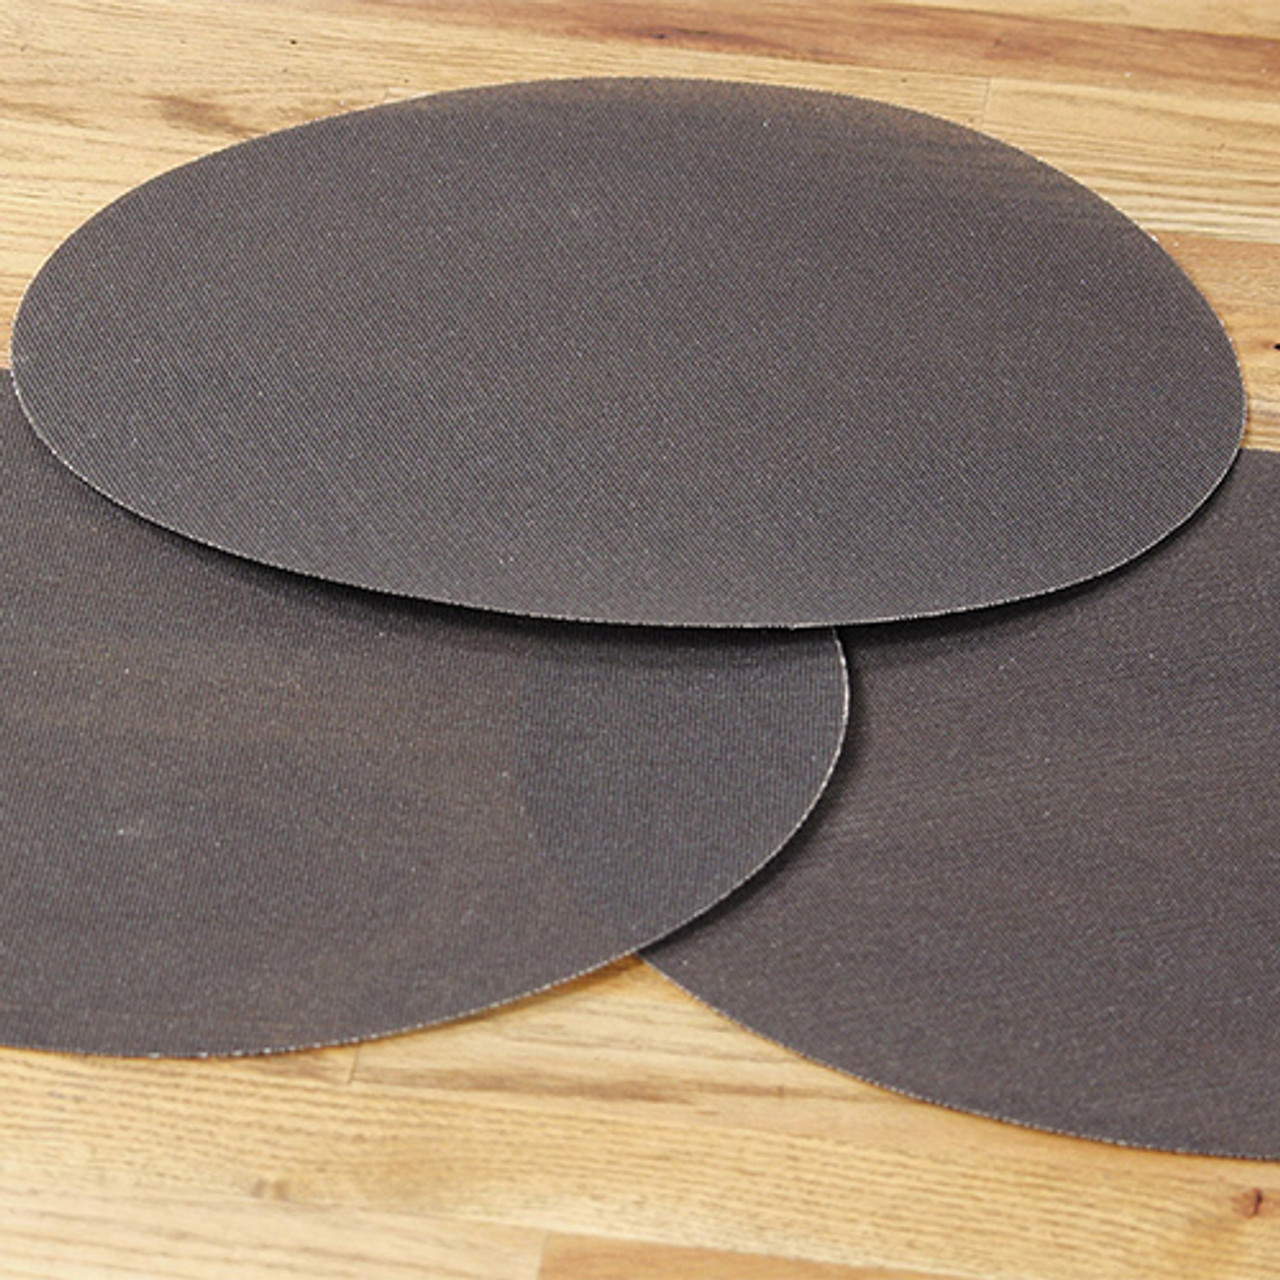 Klingspor Abrasives 16" Mesh Screen Floor Sanding Disc, 180 Grit, Each